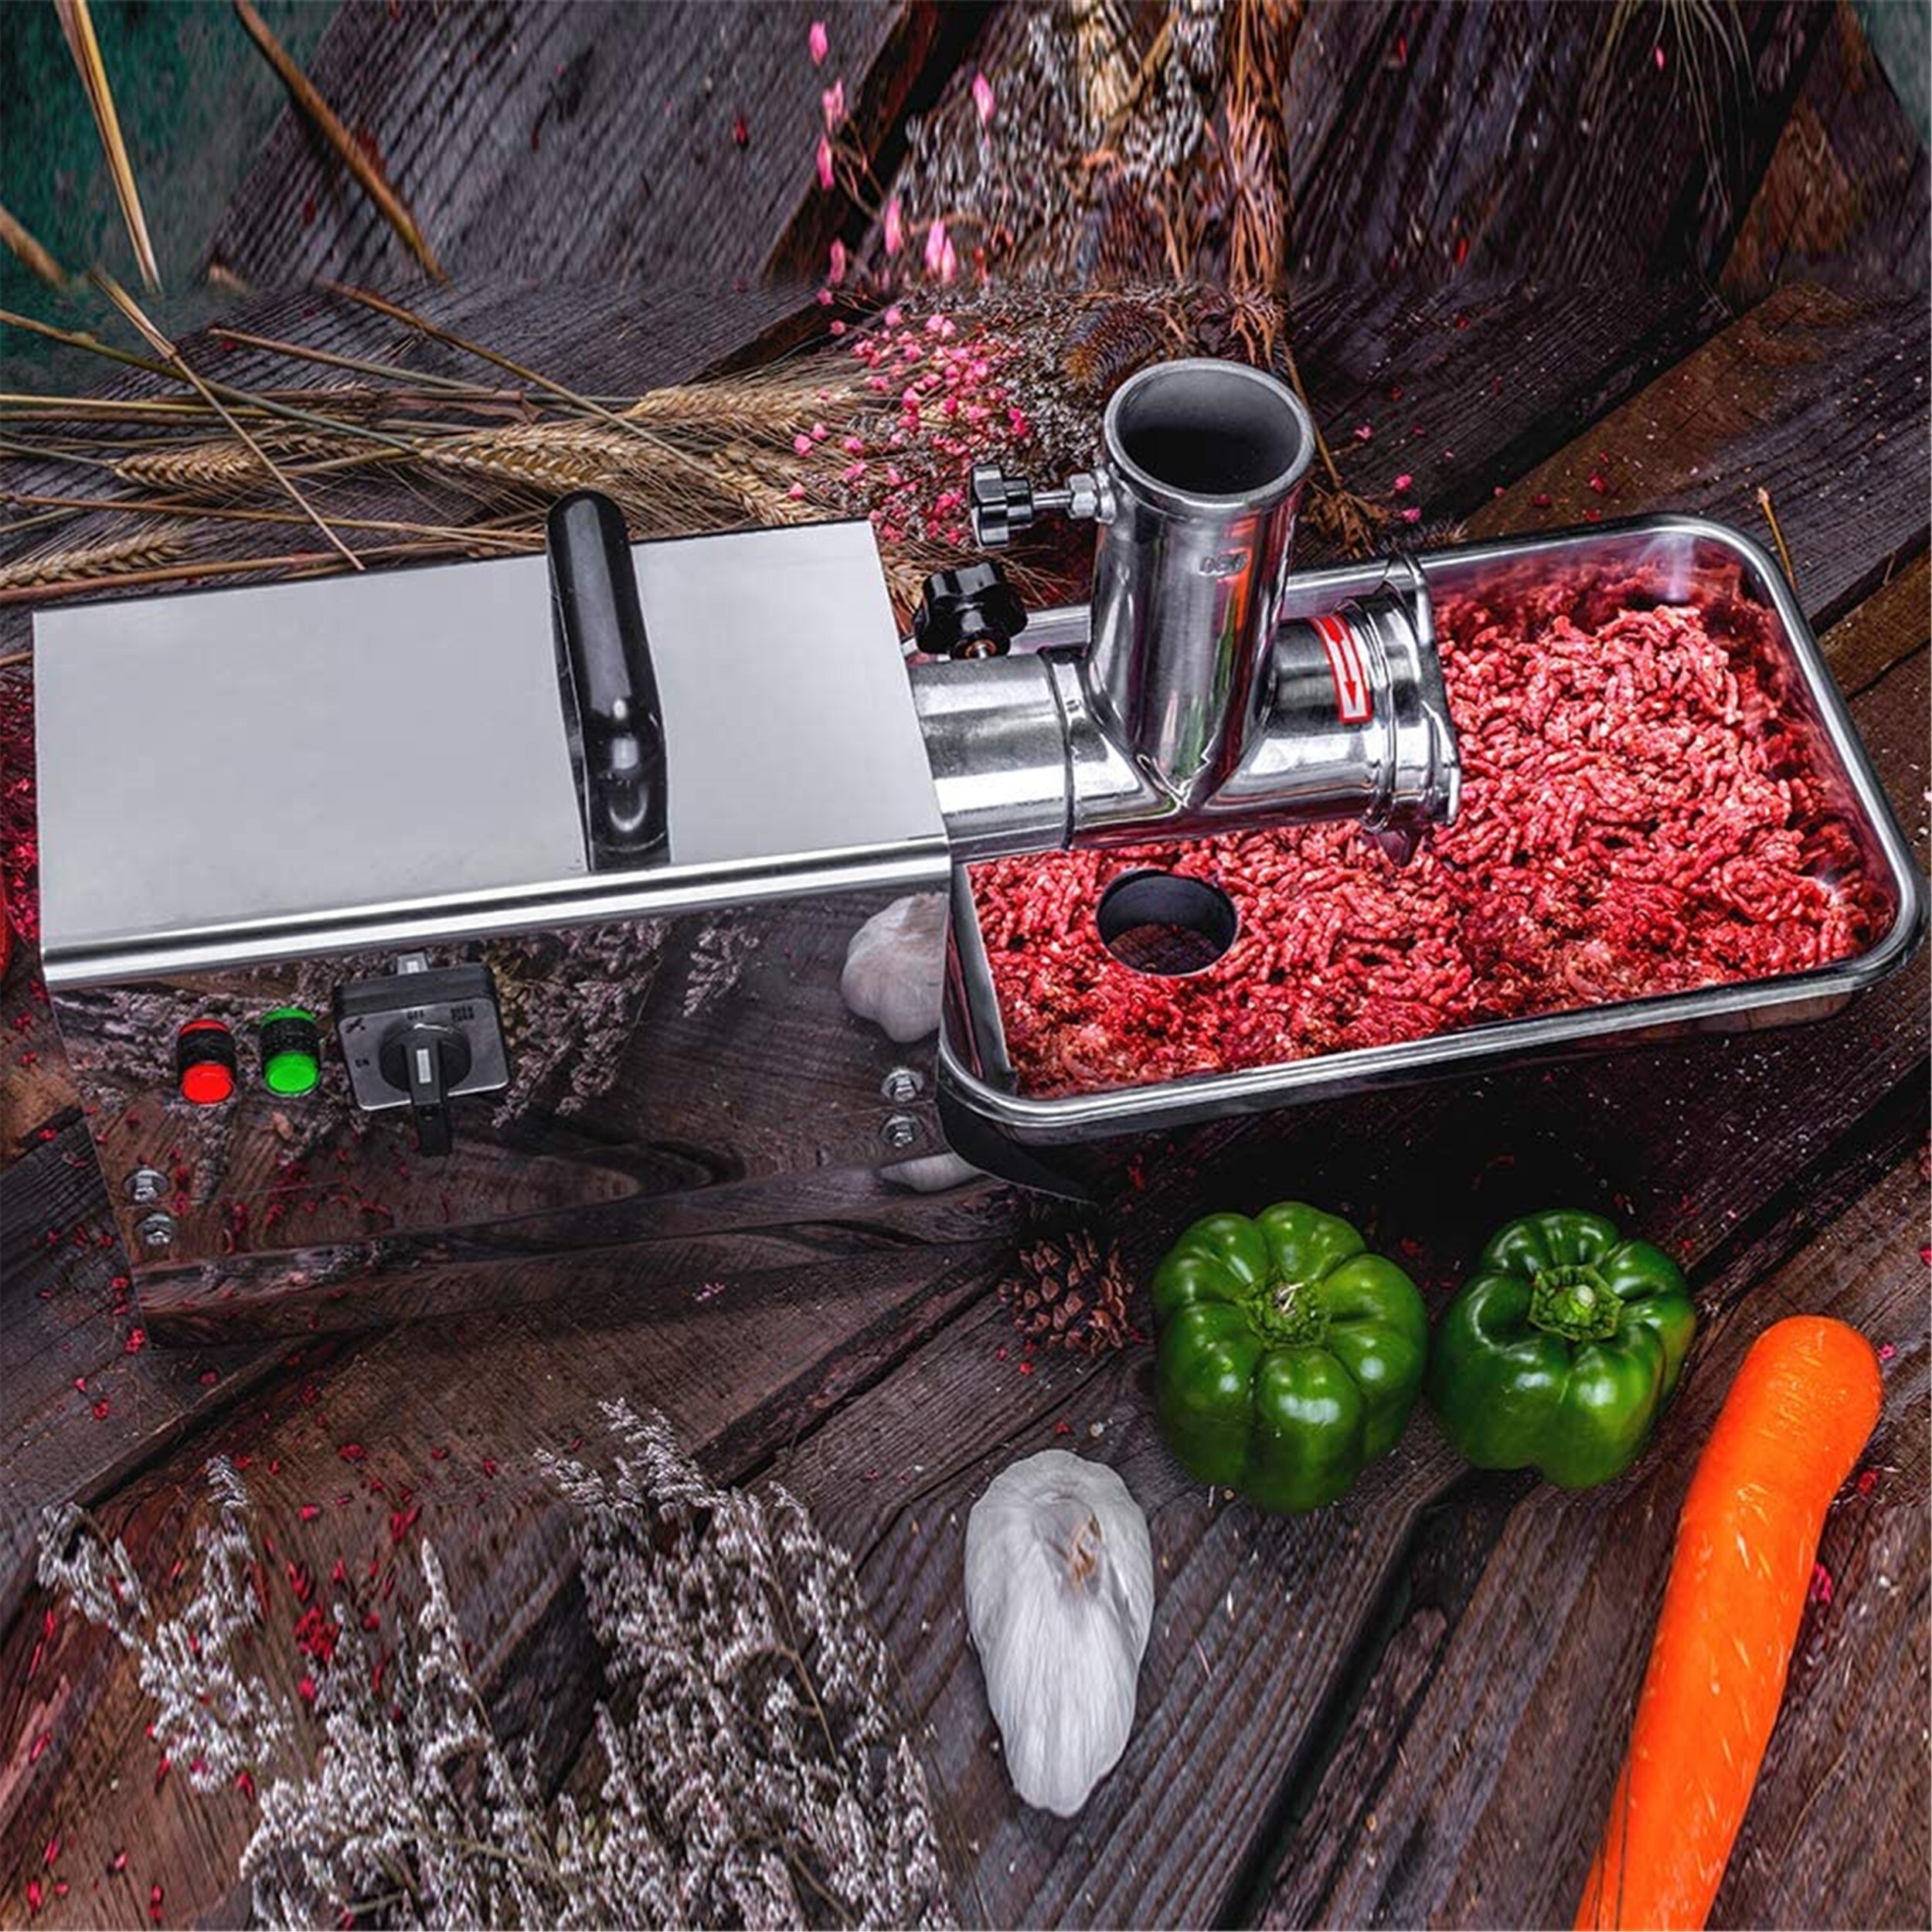 Home Electric Meat Grinder Mincer Sausage Maker Food Chopper Kitchen Helper  - Bed Bath & Beyond - 23007954